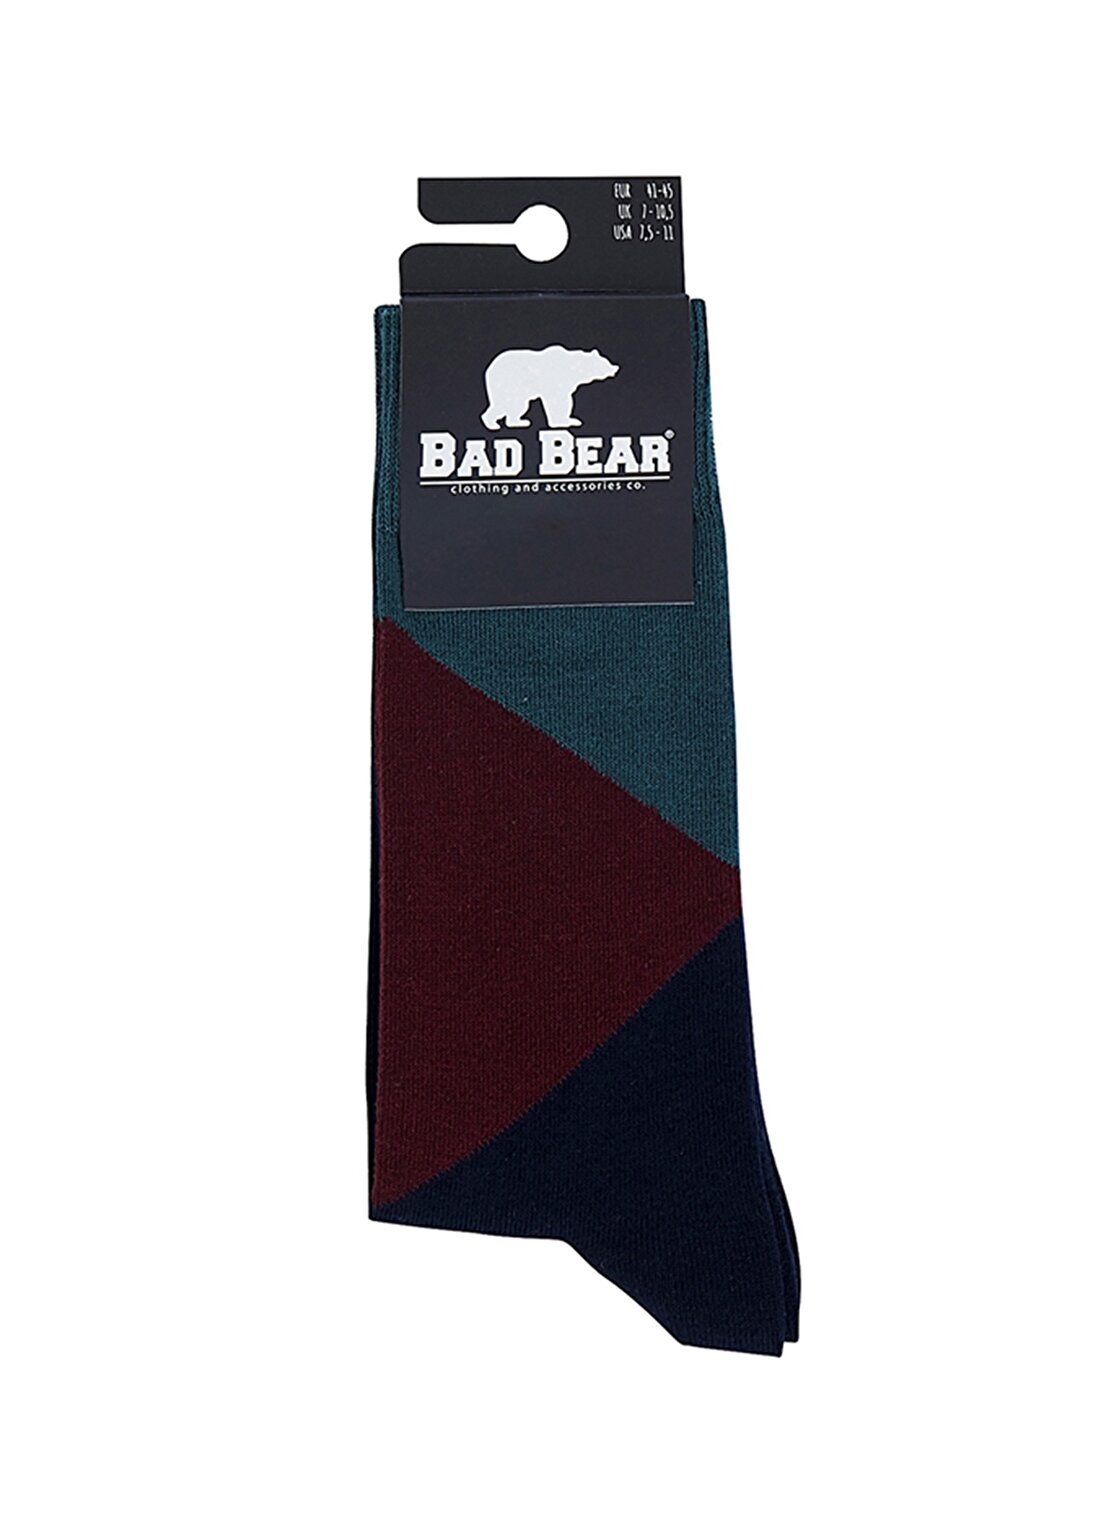 Bad Bear Koyu Yeşil Çorap